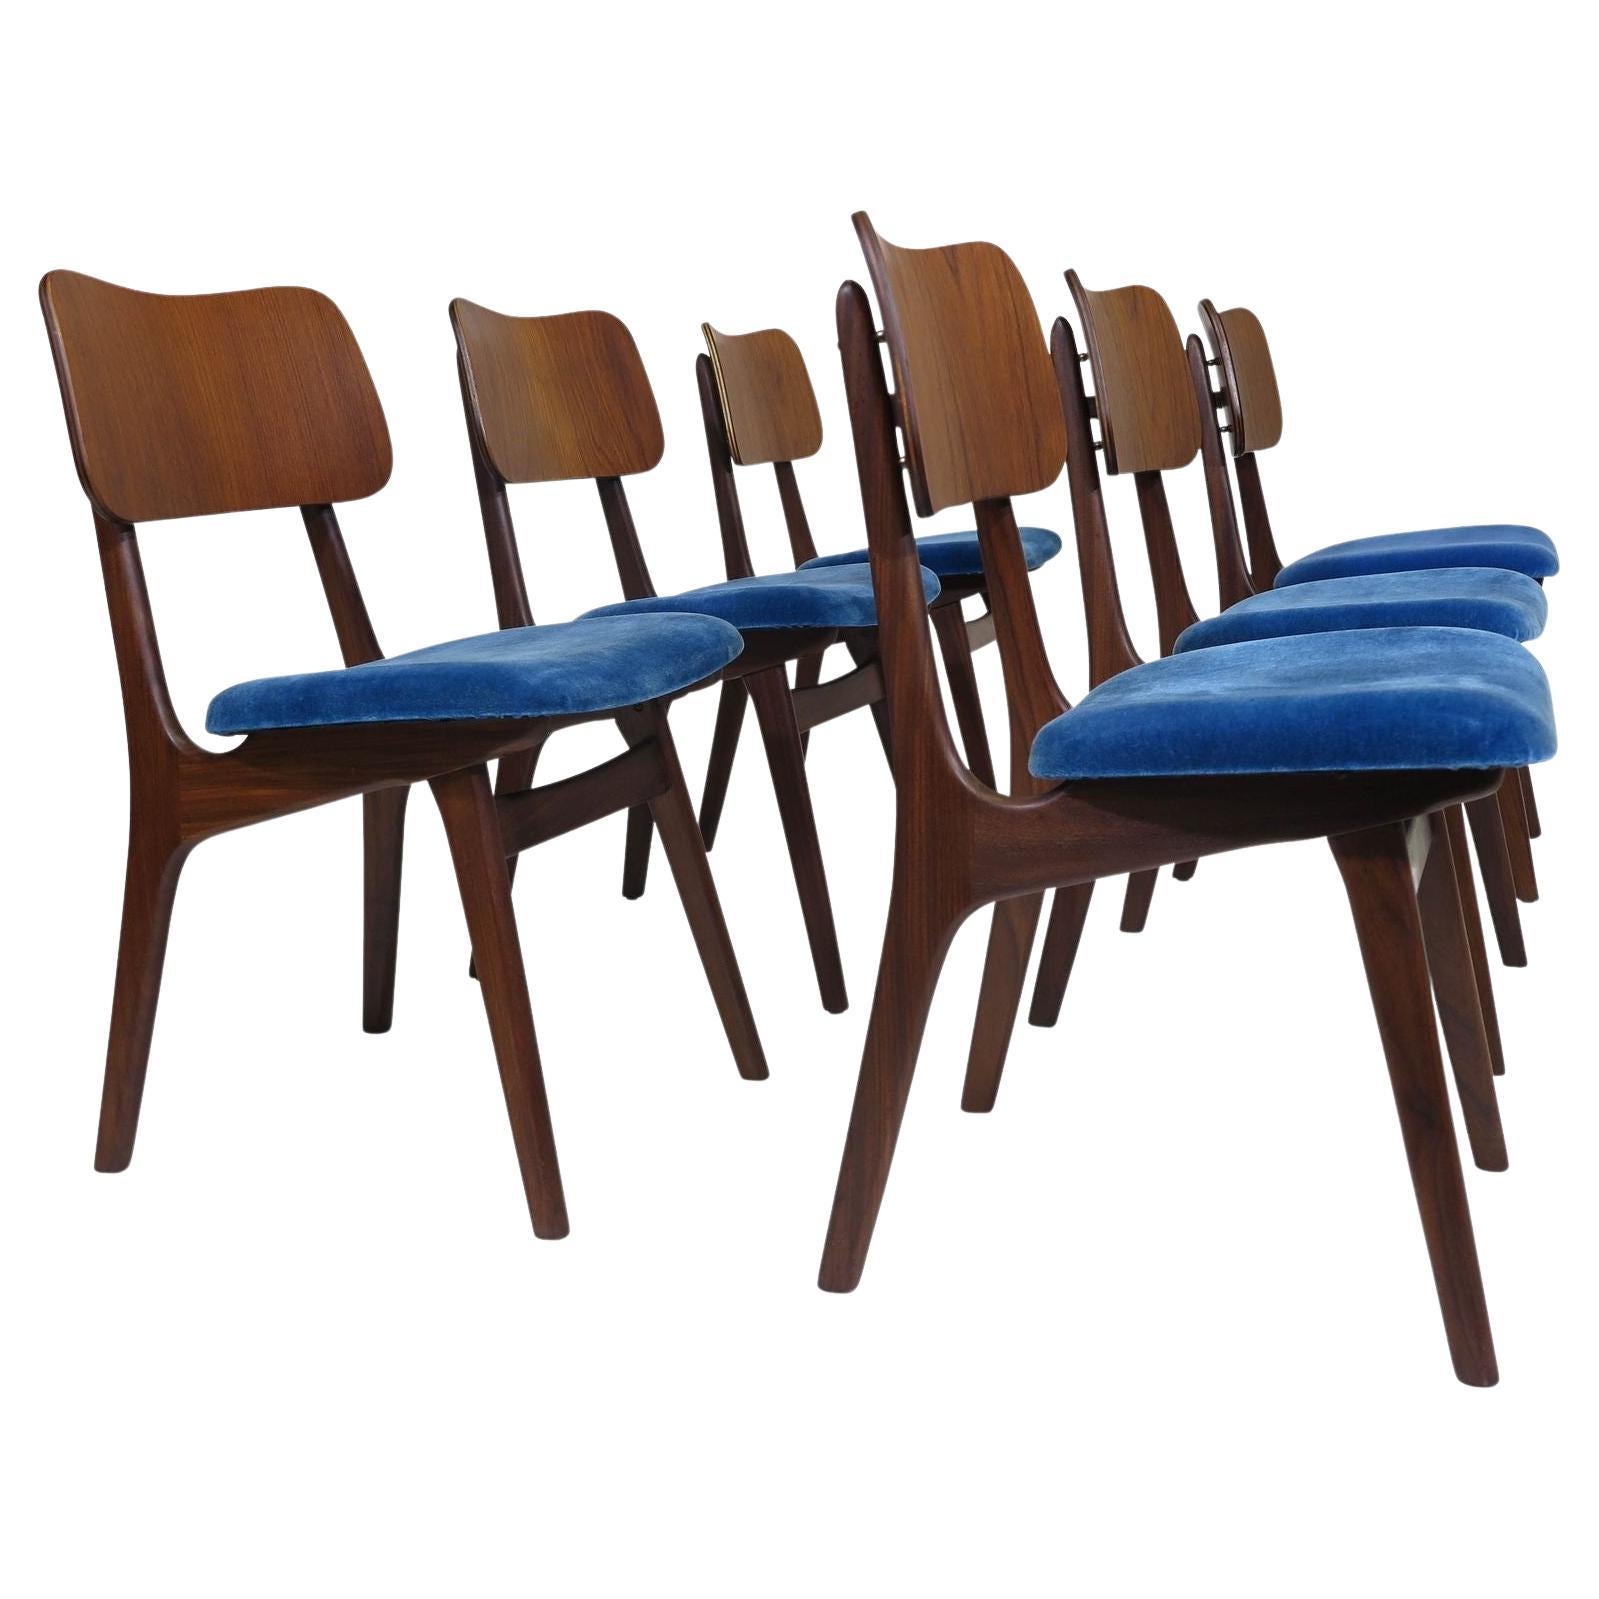 Sechs Arne Hovmand-Olsen-Esszimmerstühle aus Nussbaum und Teakholz, 30 verfügbar